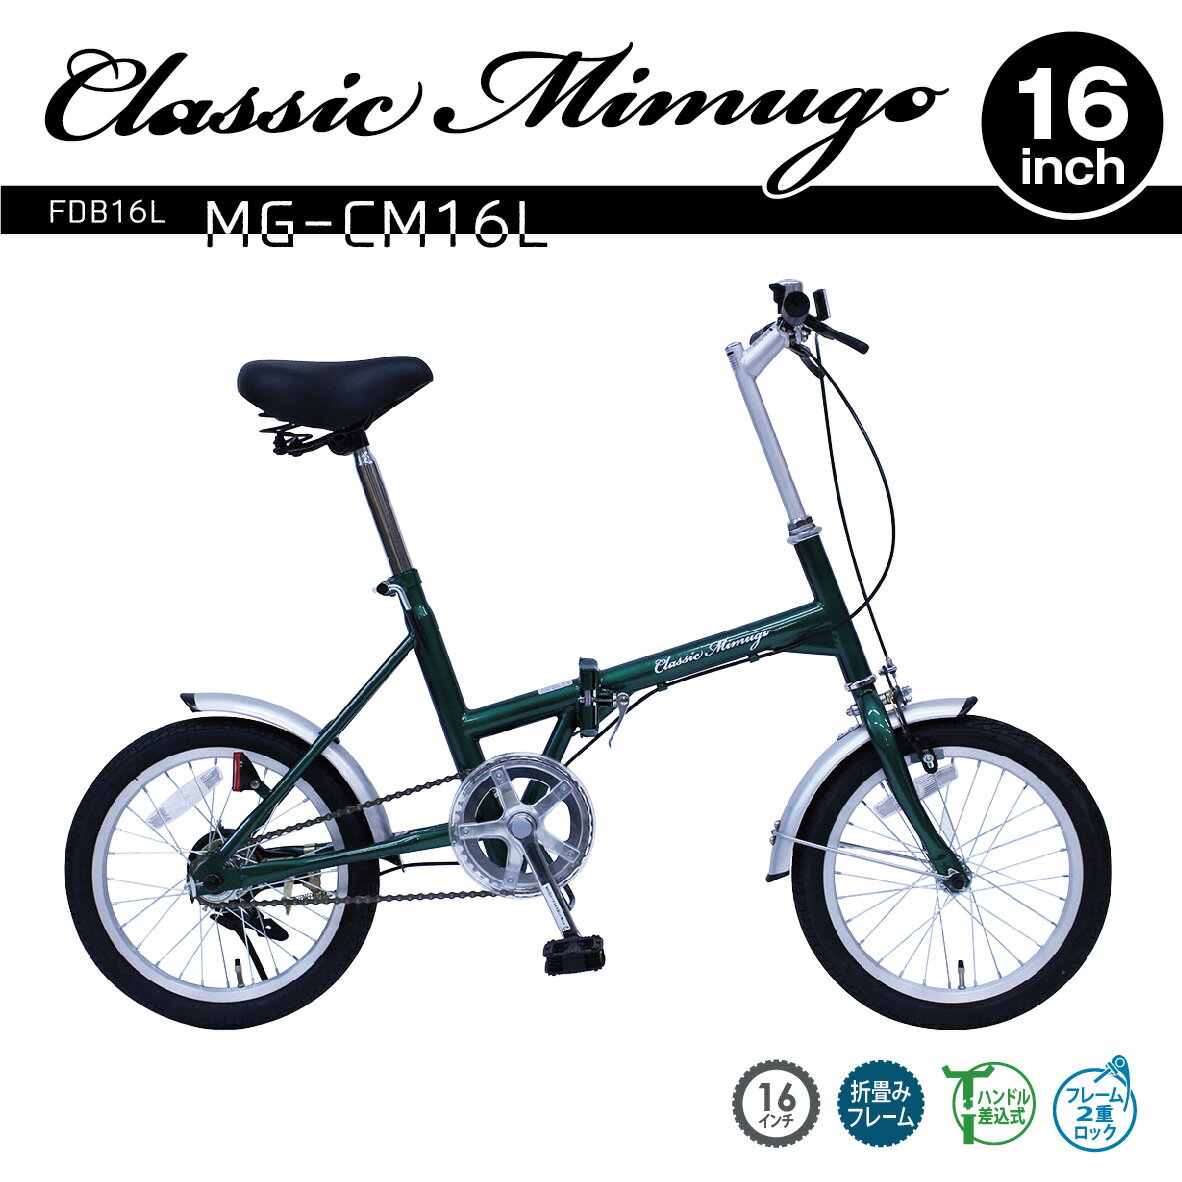 ミムゴ 【代引不可】クラシックミムゴ 折りたたみ 16インチ 自転車 MG-CM16L 直送のため他の商品と同時注文不可（単品購入のみ可） ※最大14日間ほどかかる場合がございます。